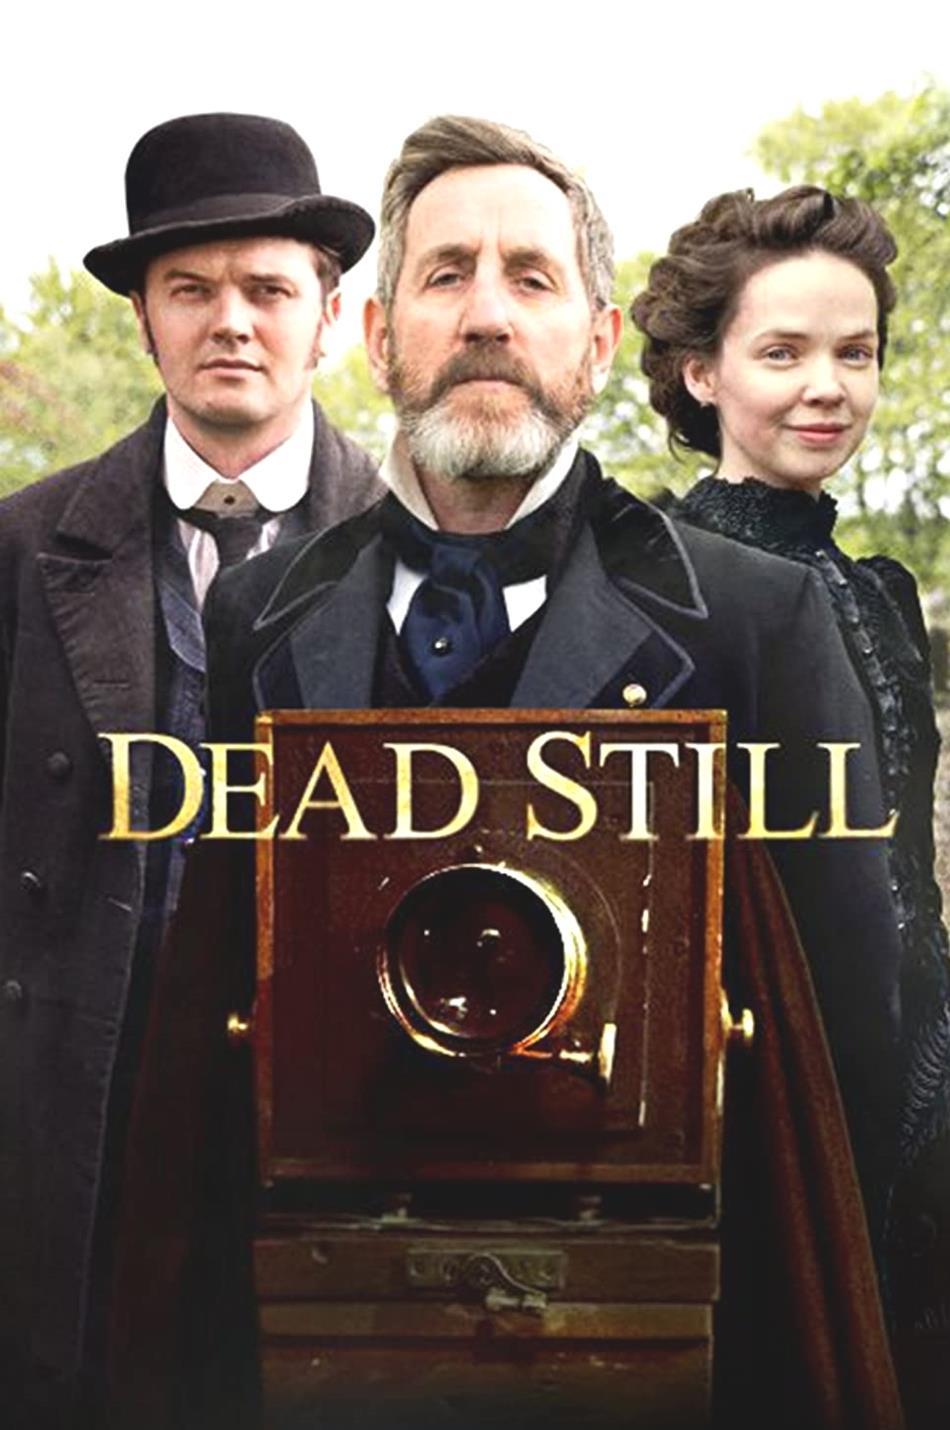 Dead Still Stagione 2 data di uscita cast trama trailer e molti j5xzO1jyj 1 1